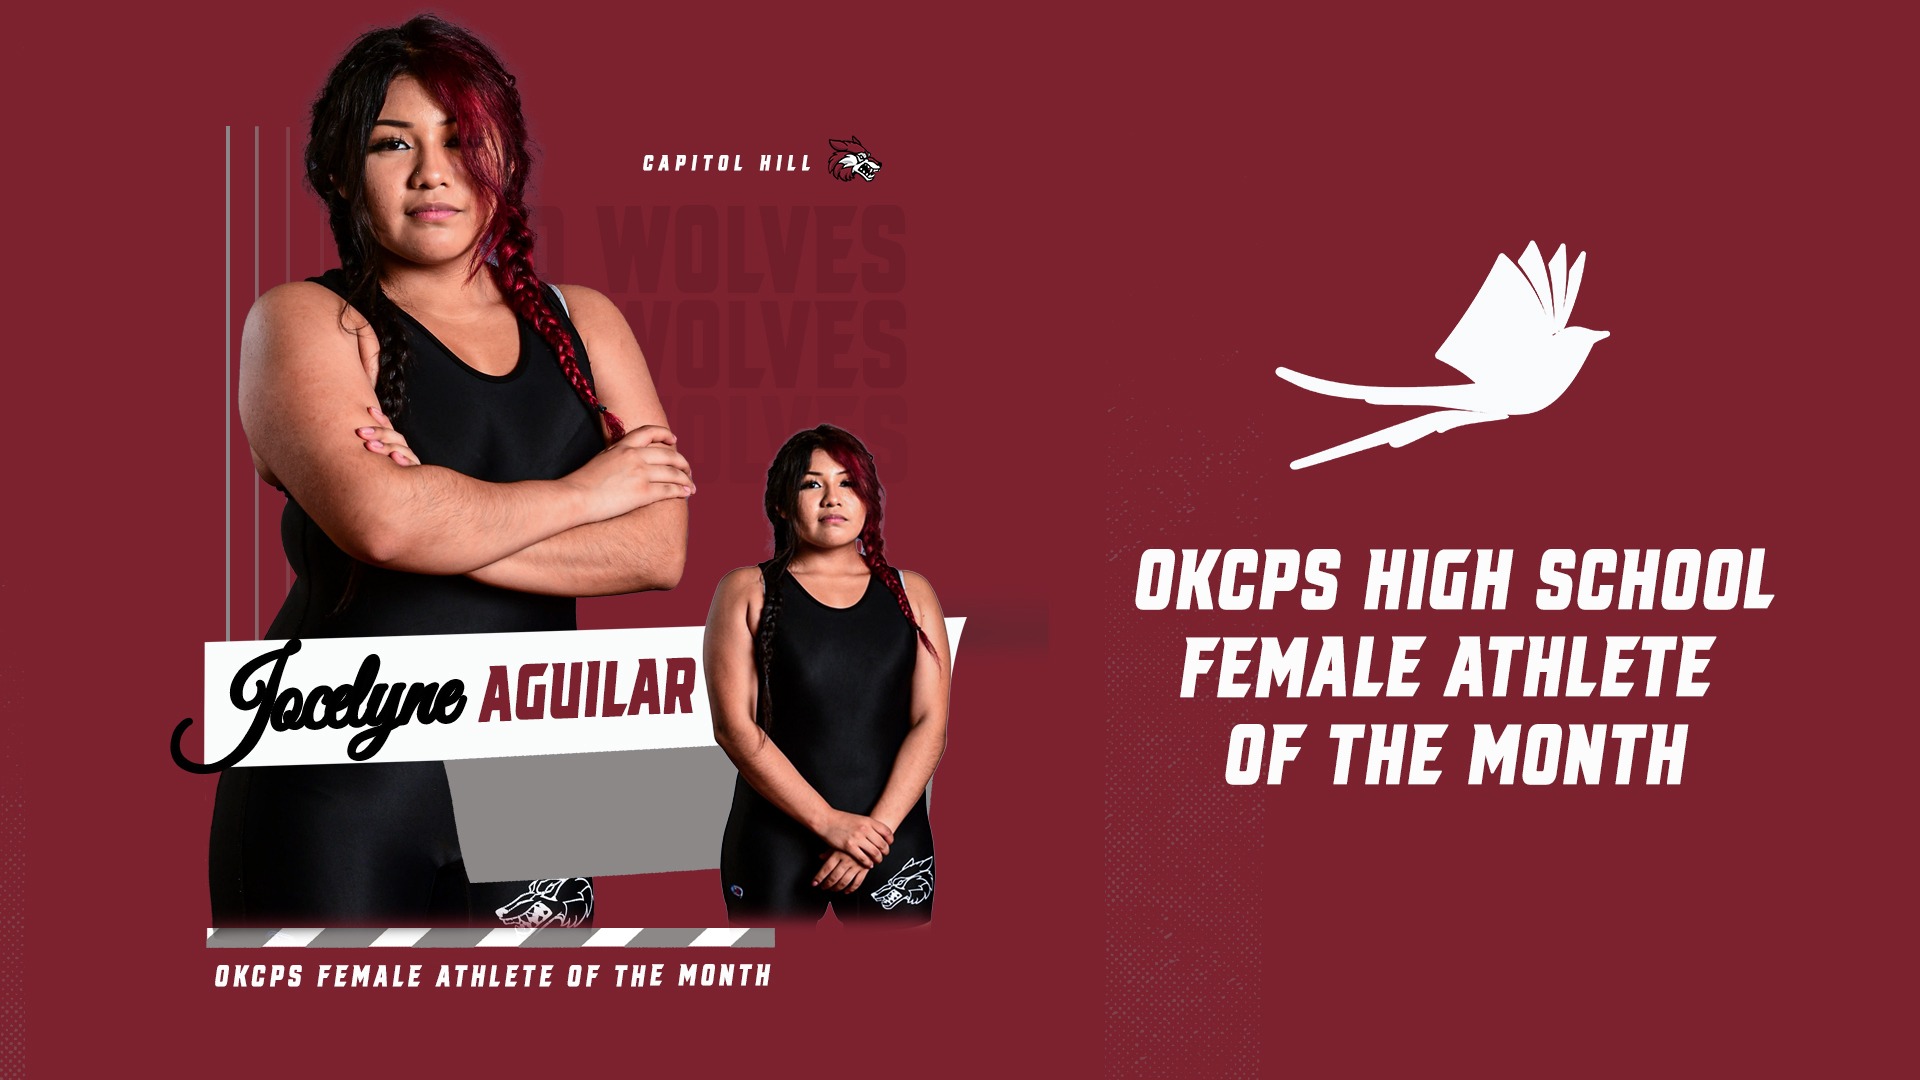 Slide 2 - Jocelyne Aguilar Named OKCPS February Female Athlete of the Month